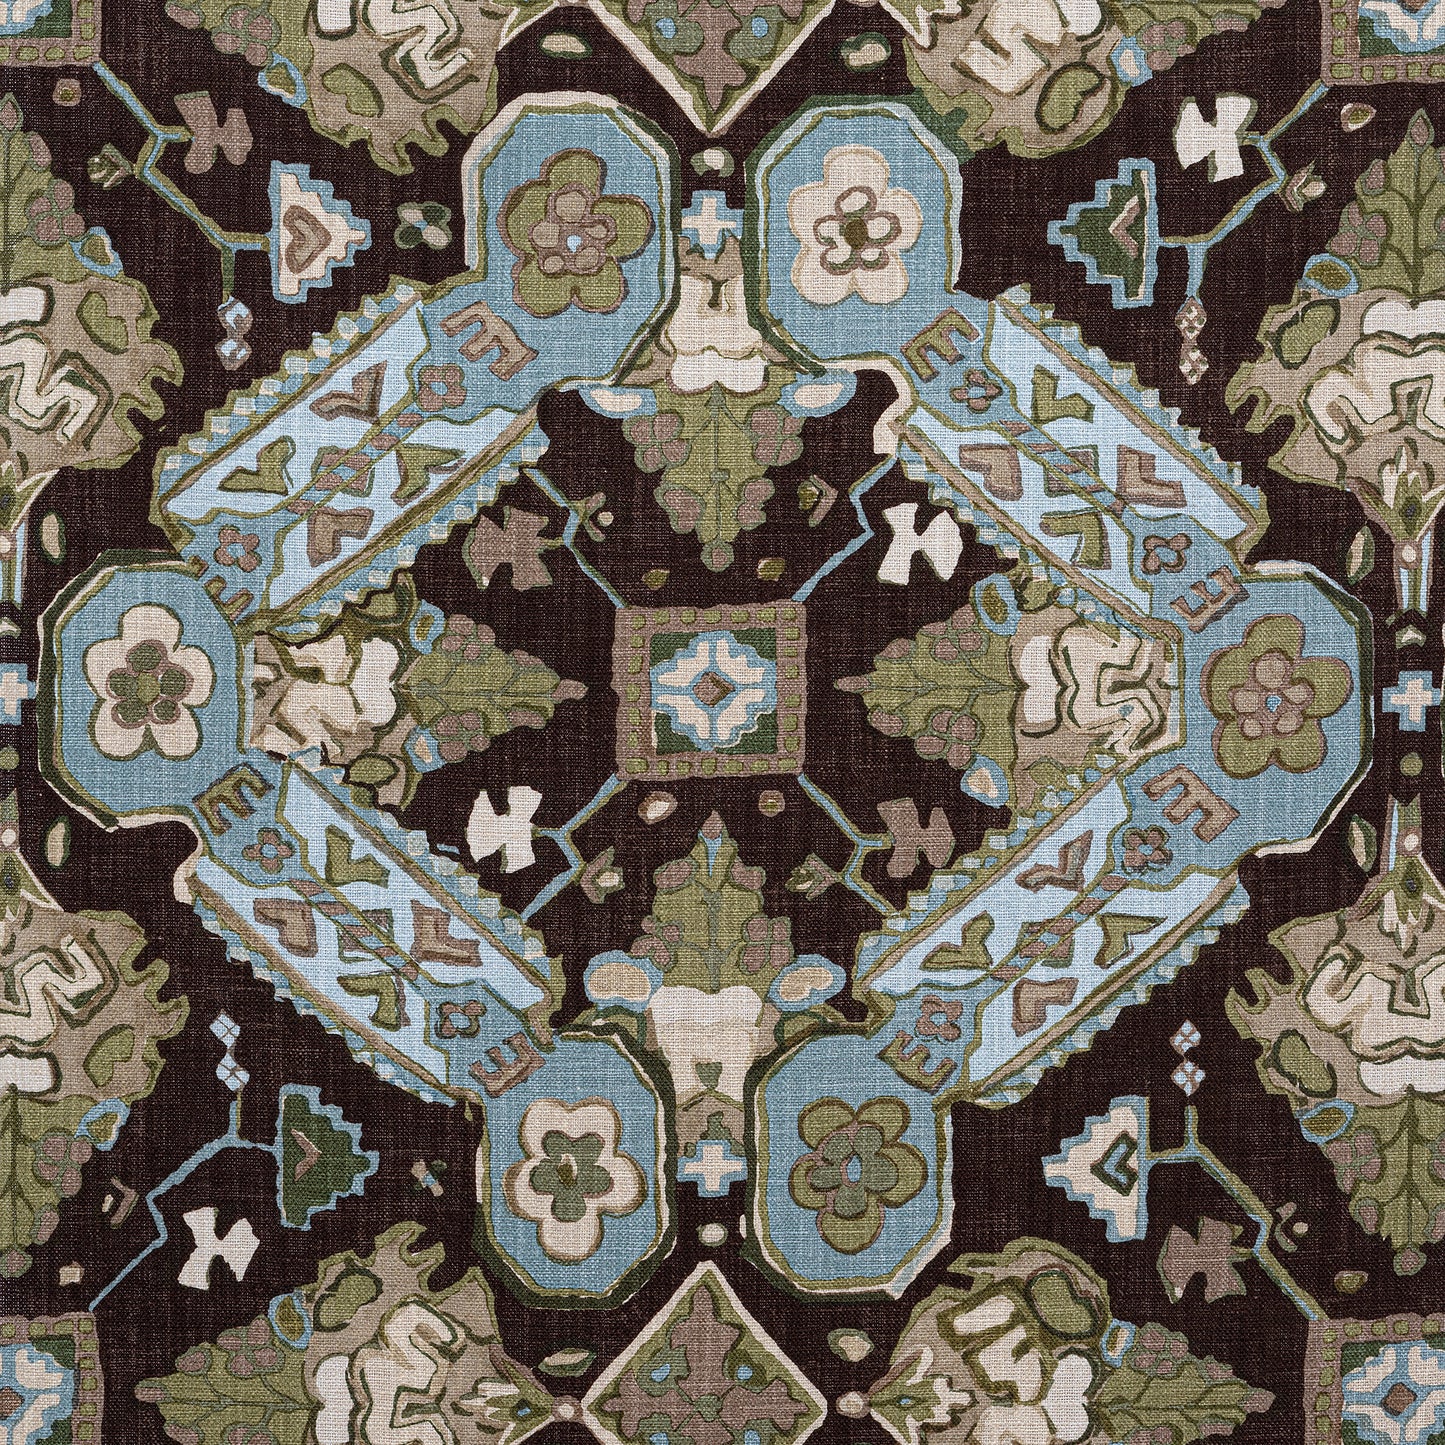 Buy samples of F910826 Persian Carpet Printed Heritage Thibaut Fabrics